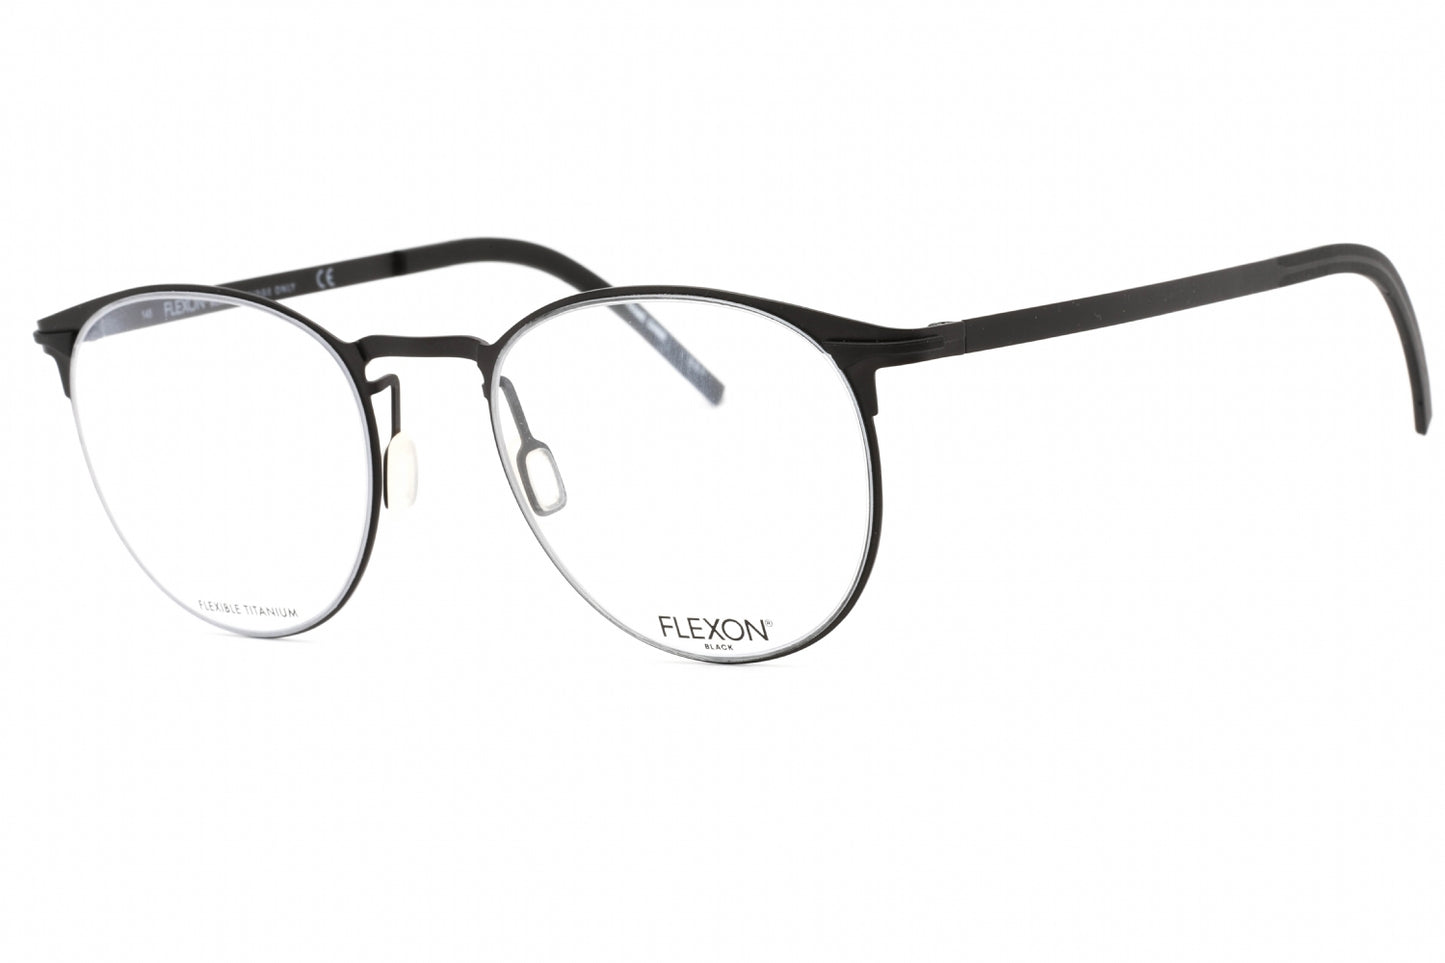 Flexon FLEXON B2000-001 50mm New Eyeglasses